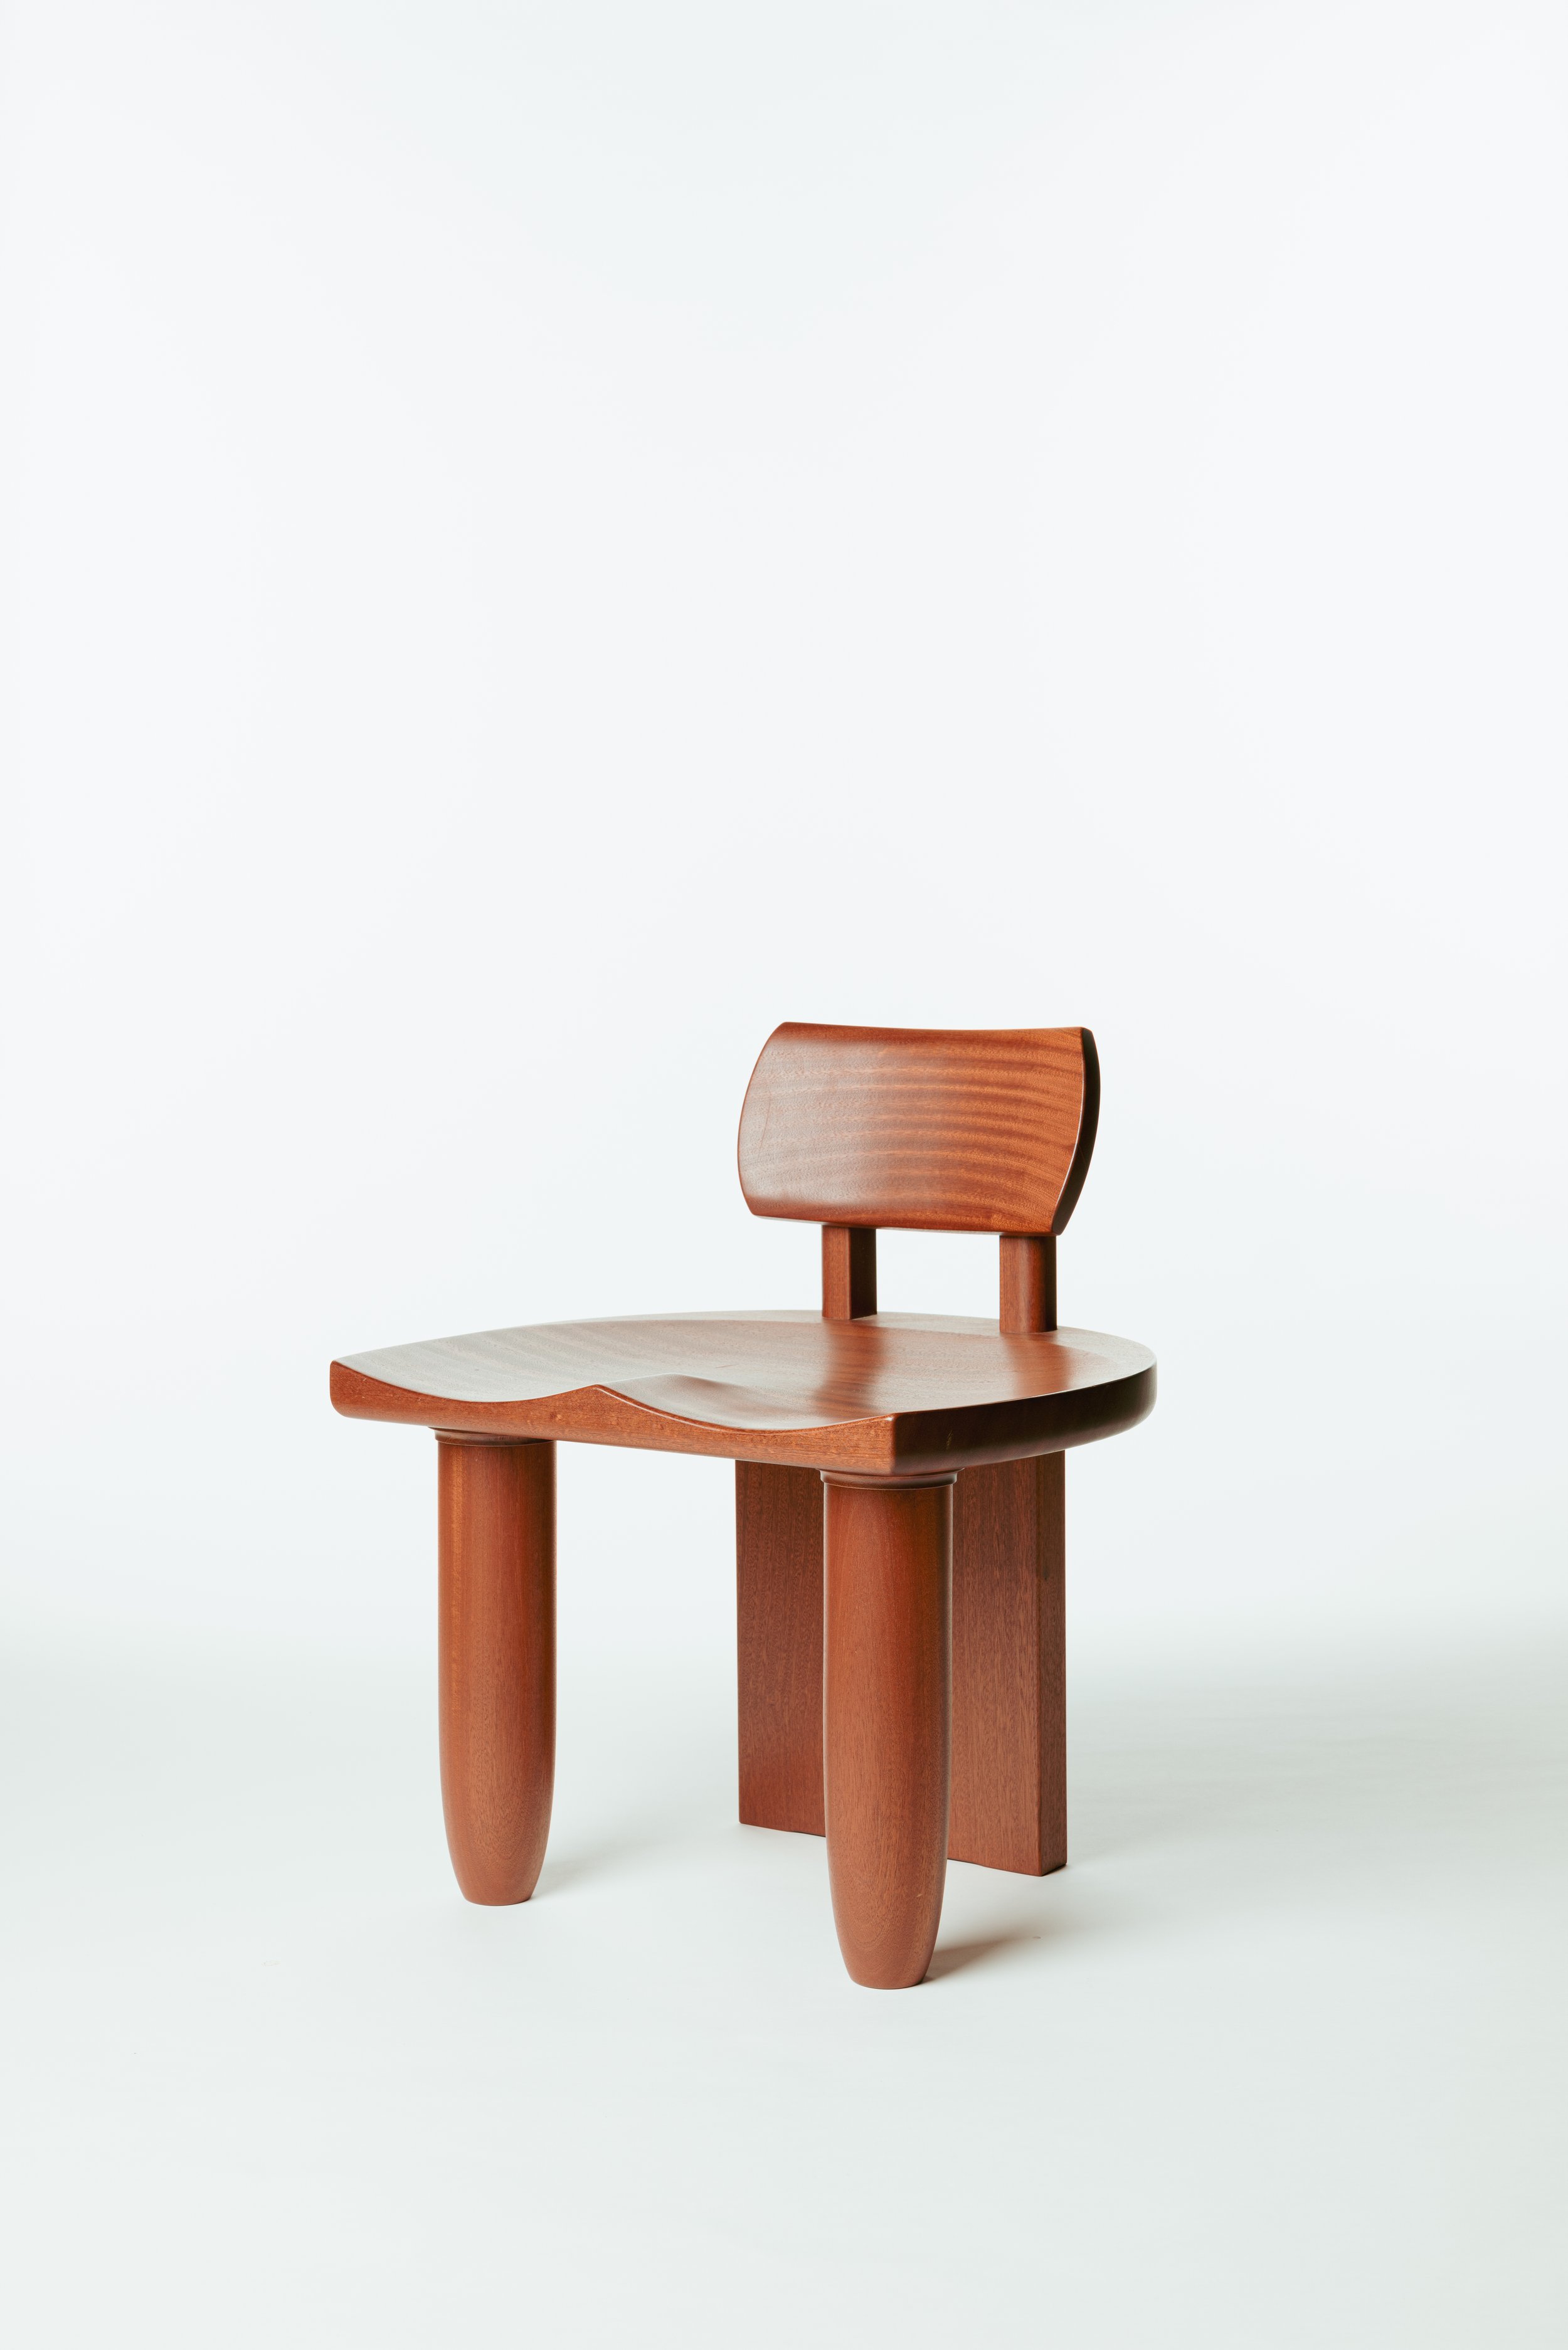  Furniture designed by Bennett   Photos courtesy Studio Kër  